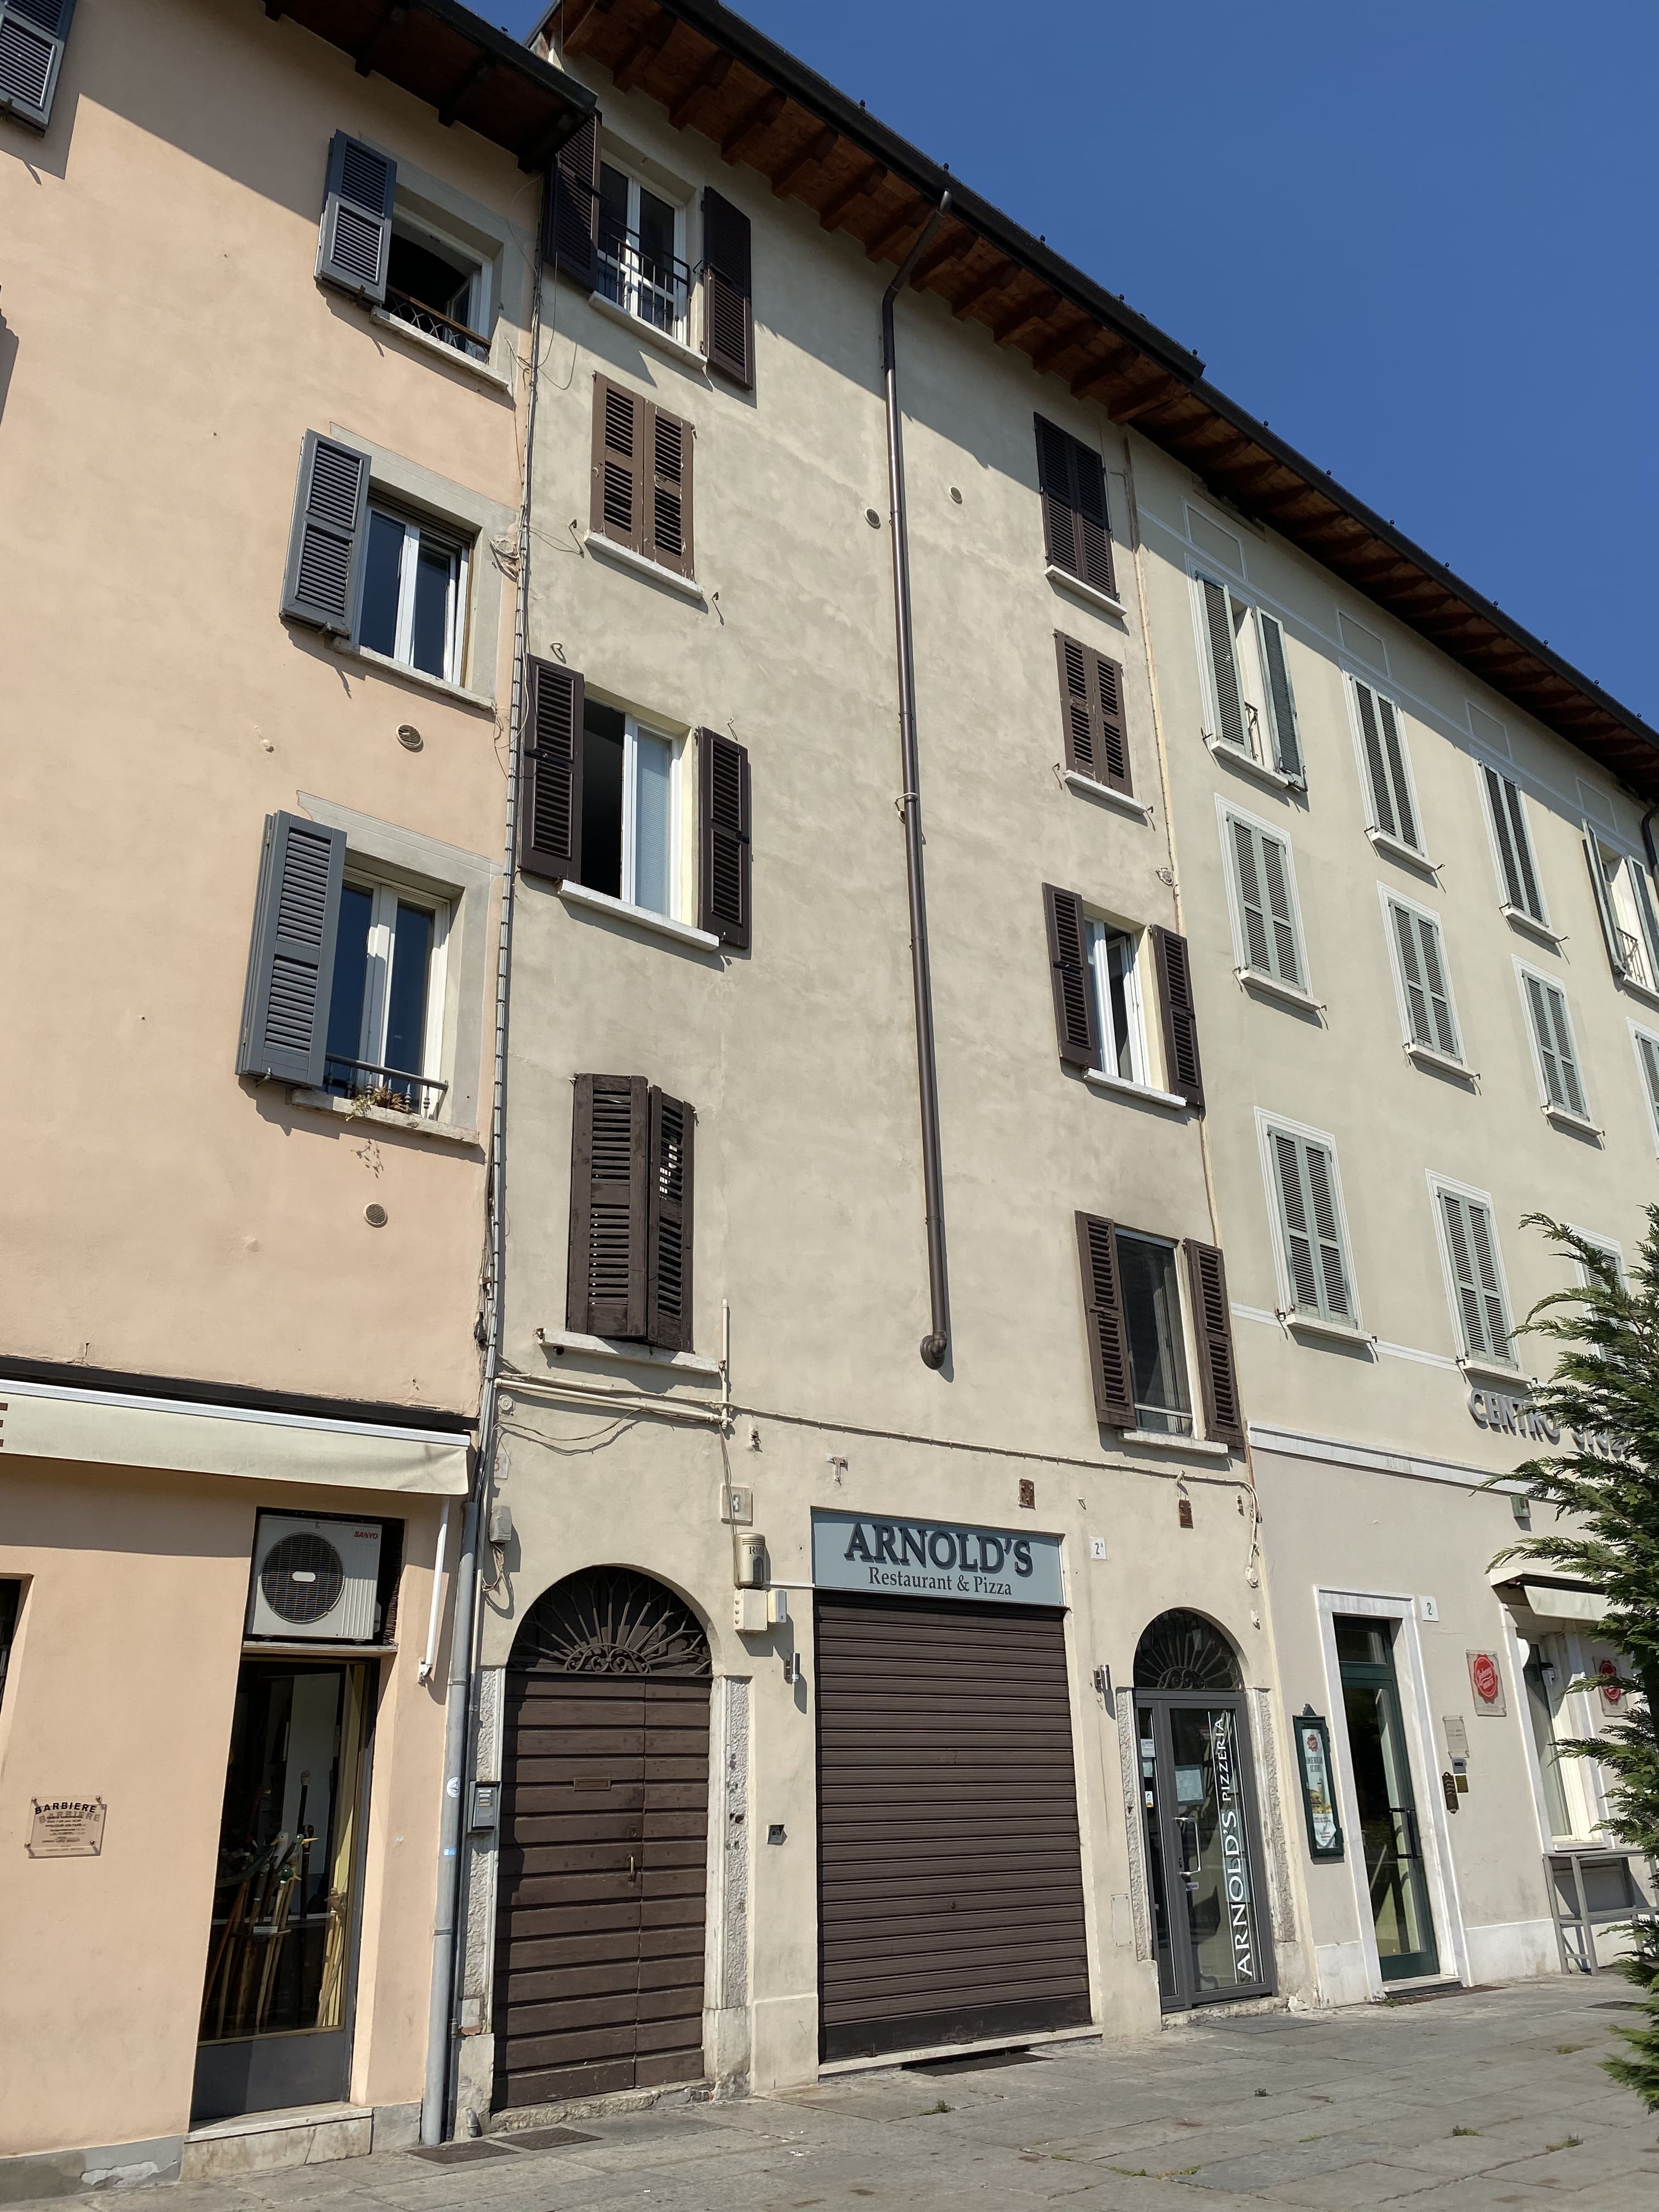 Casa in Piazzale Arnaldo, 3 (casa, in linea) - Brescia (BS)  (N.R)